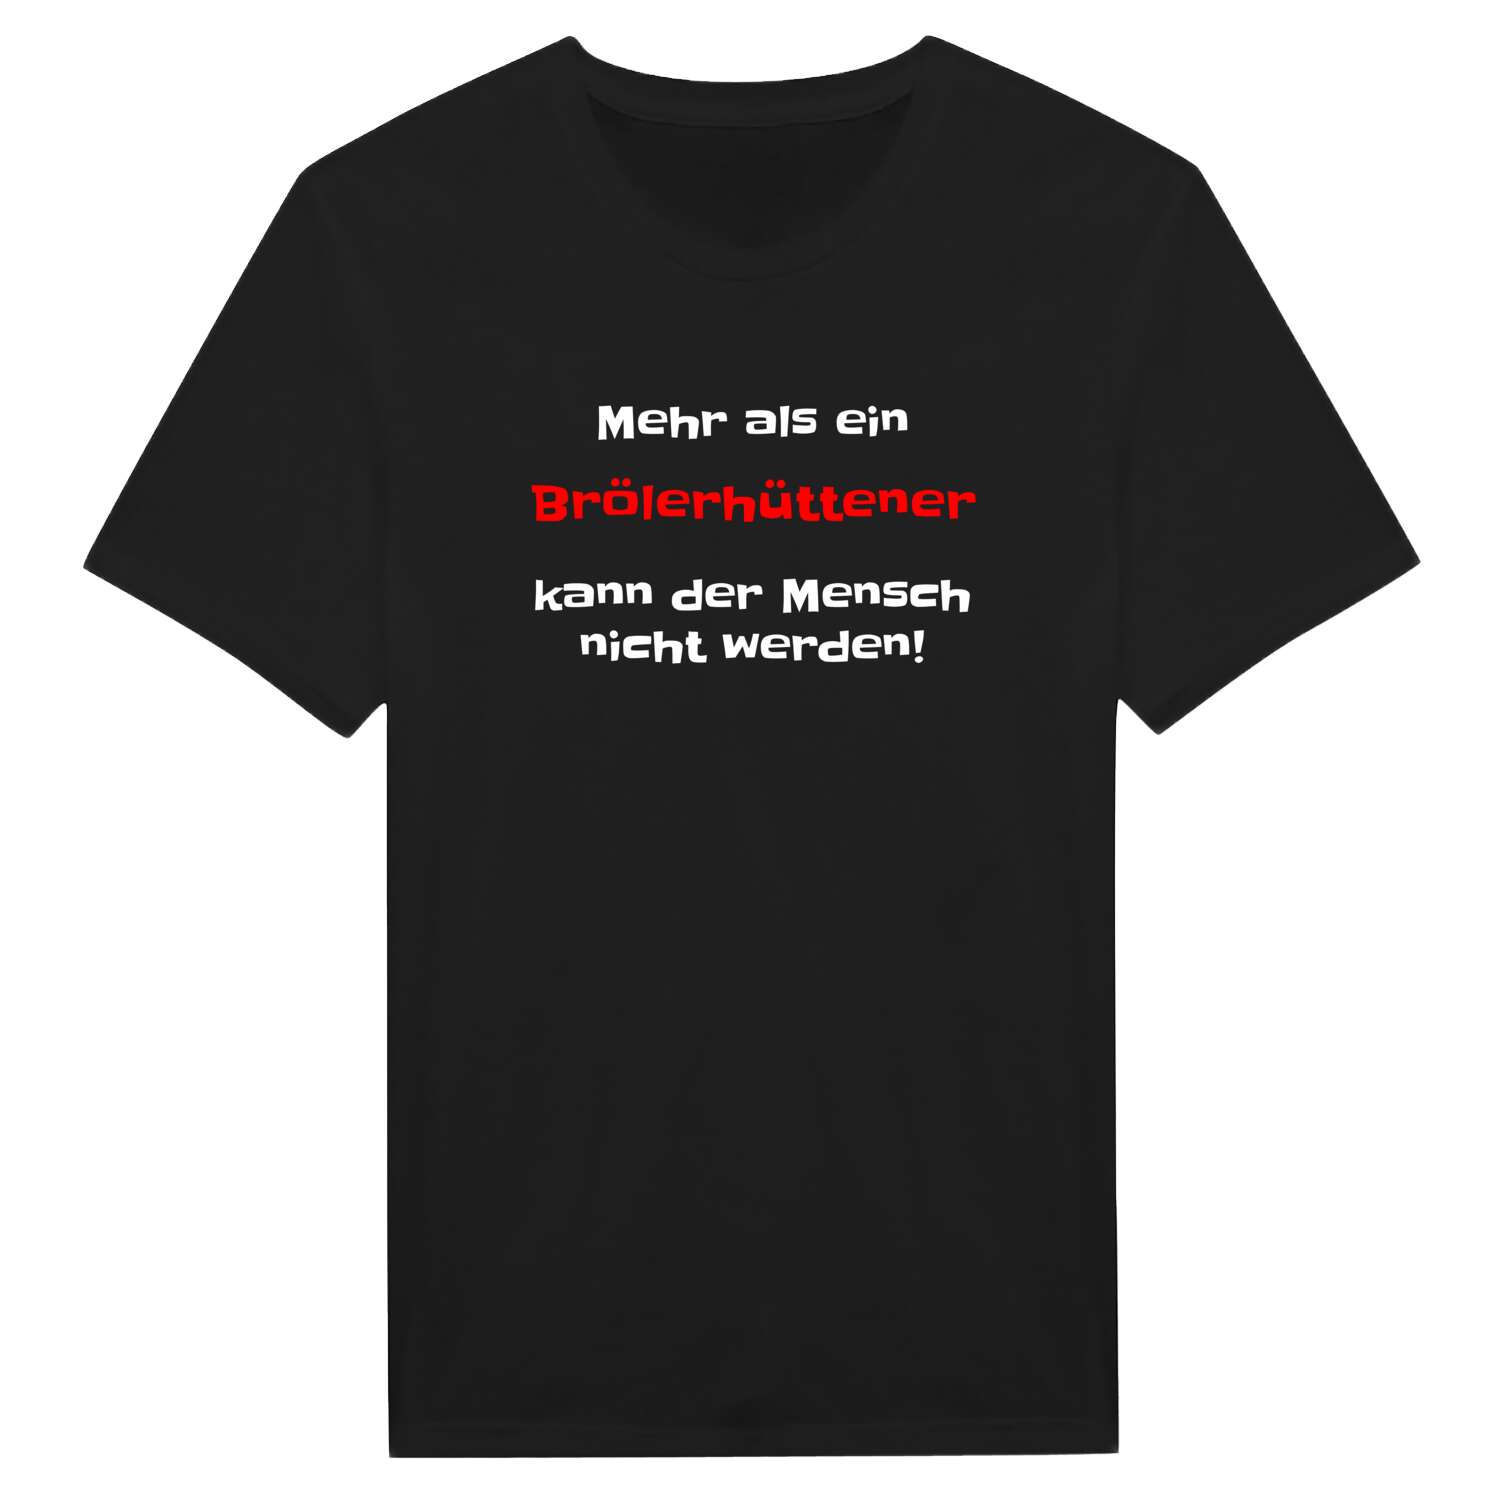 Brölerhütte T-Shirt »Mehr als ein«